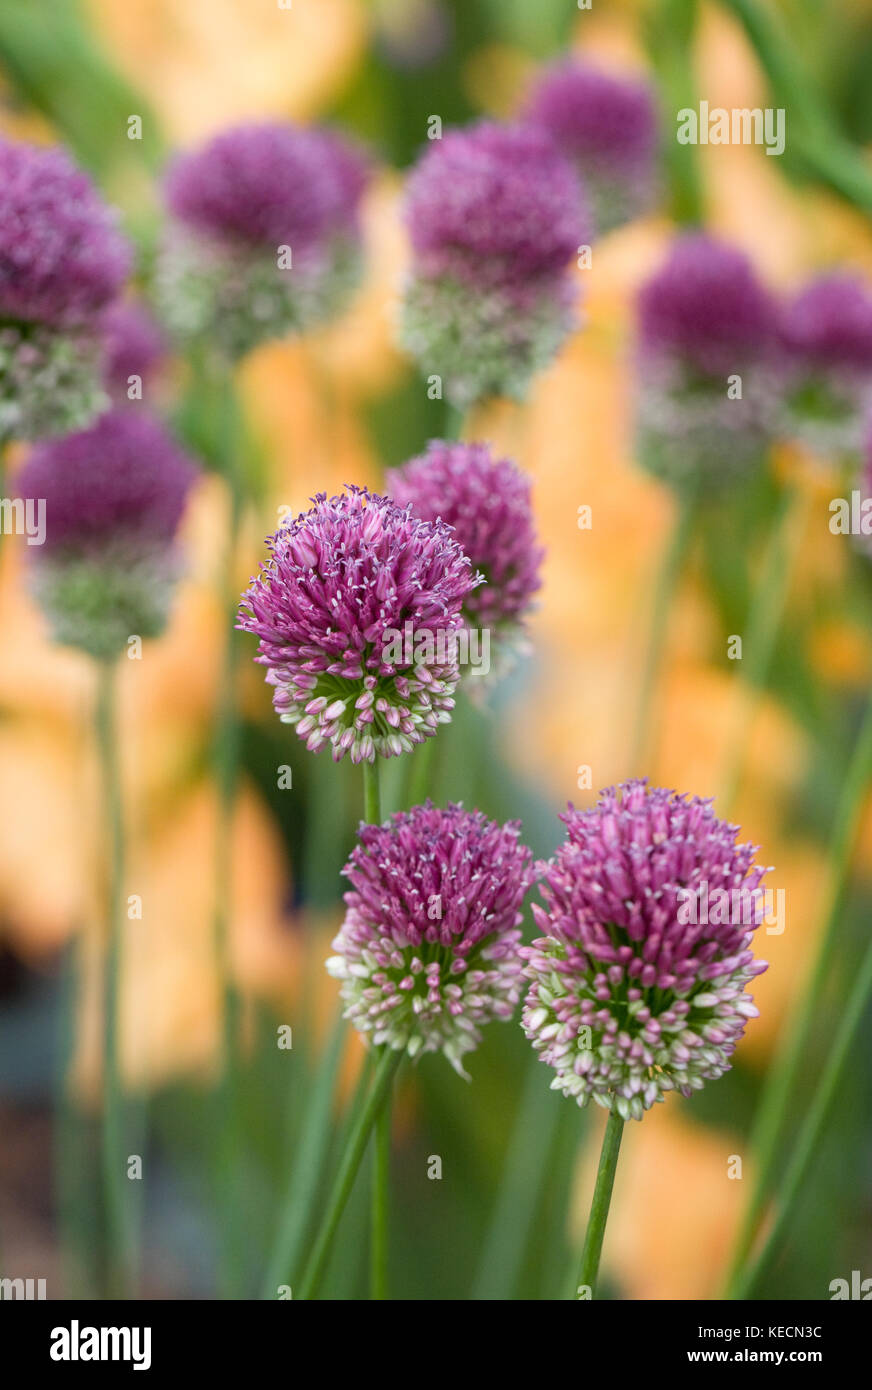 Allium sphaerocephalon flowers. Stock Photo